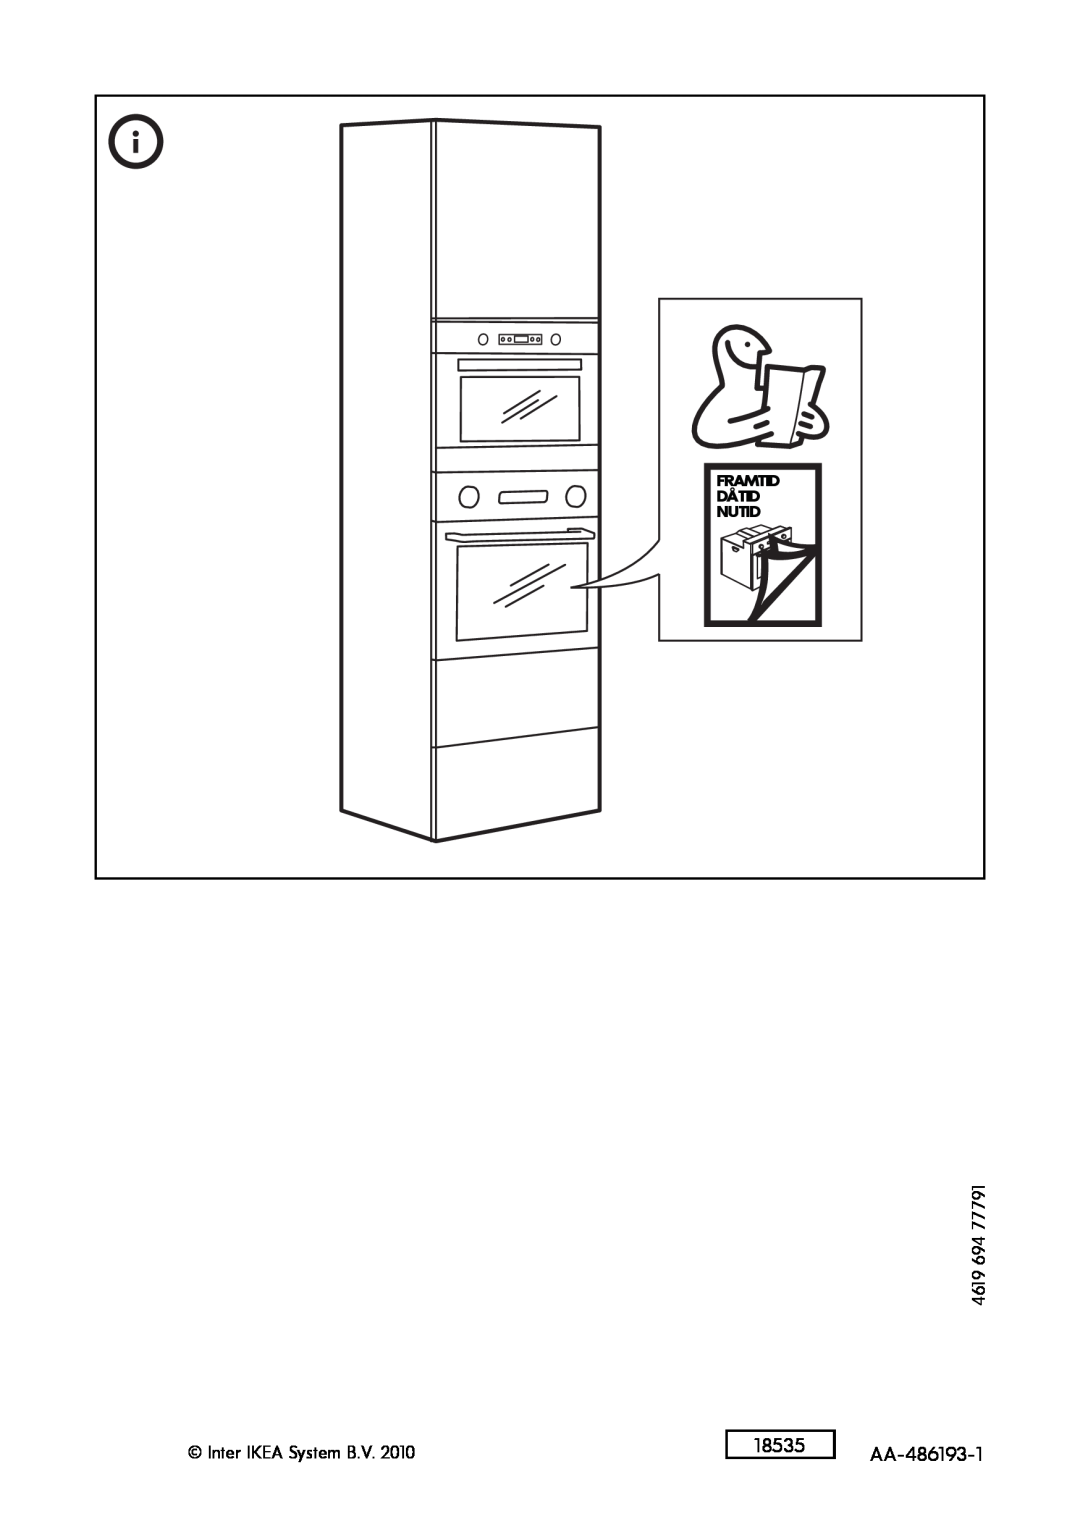 IKEA MW6 manual 18535, AA-486193-1, 4619, Inter IKEA System B.V, Framtid Dåtid Nutid 